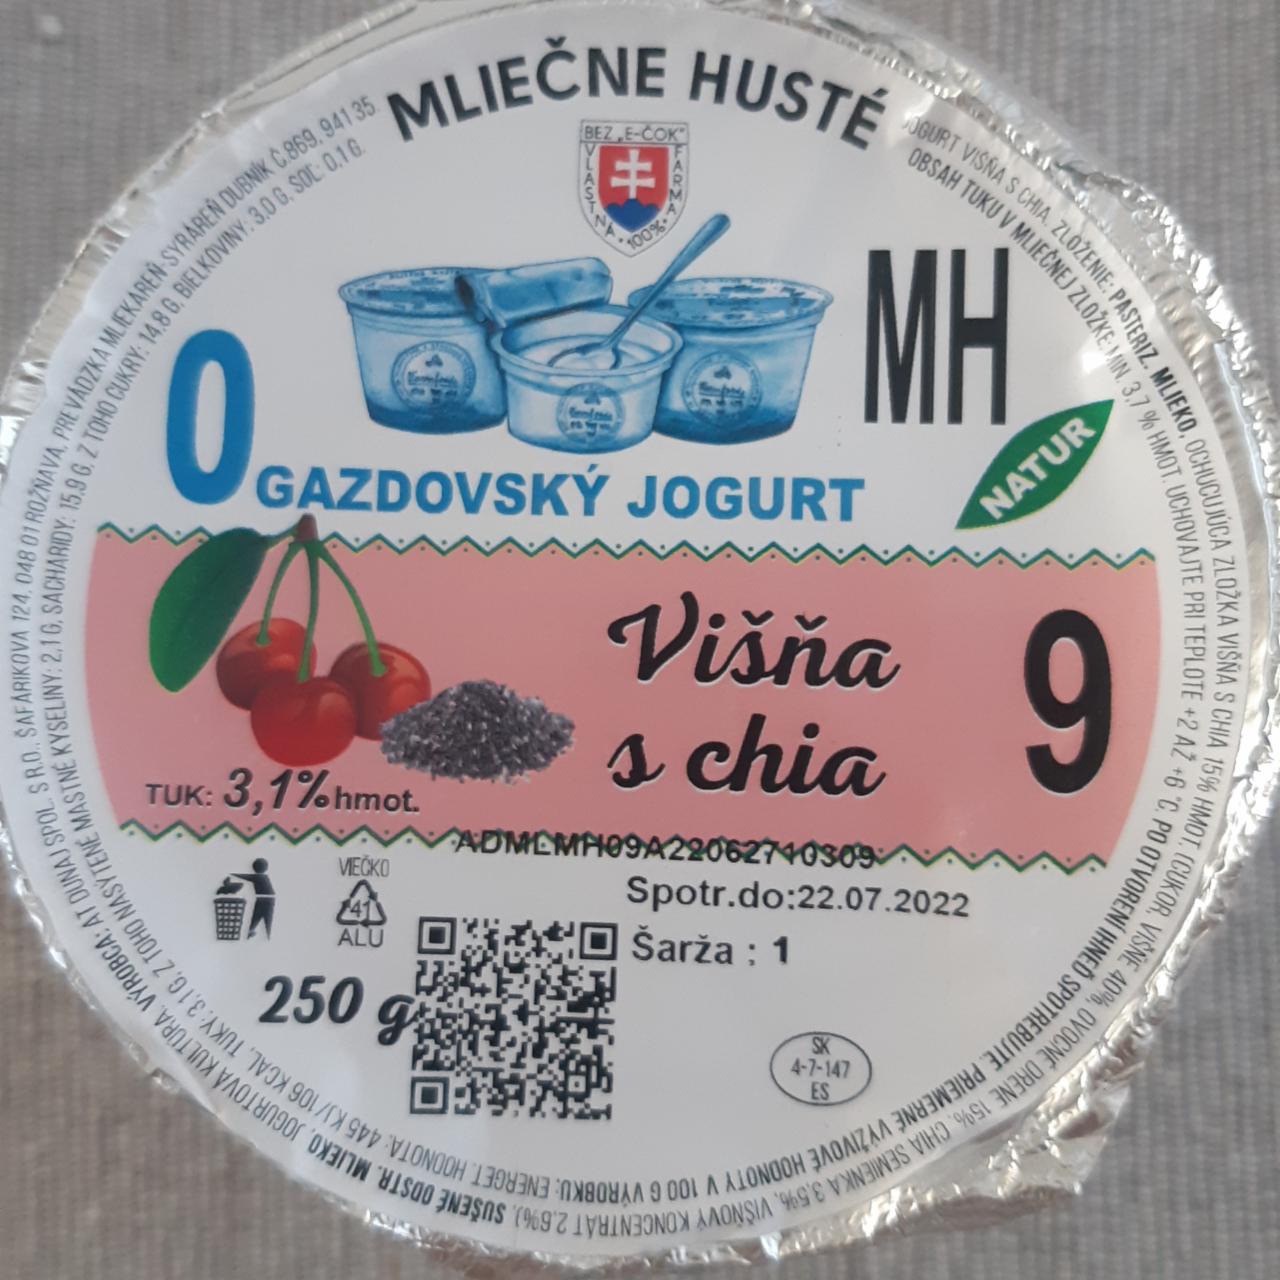 Fotografie - Gazdovský jogurt Višňa s chia